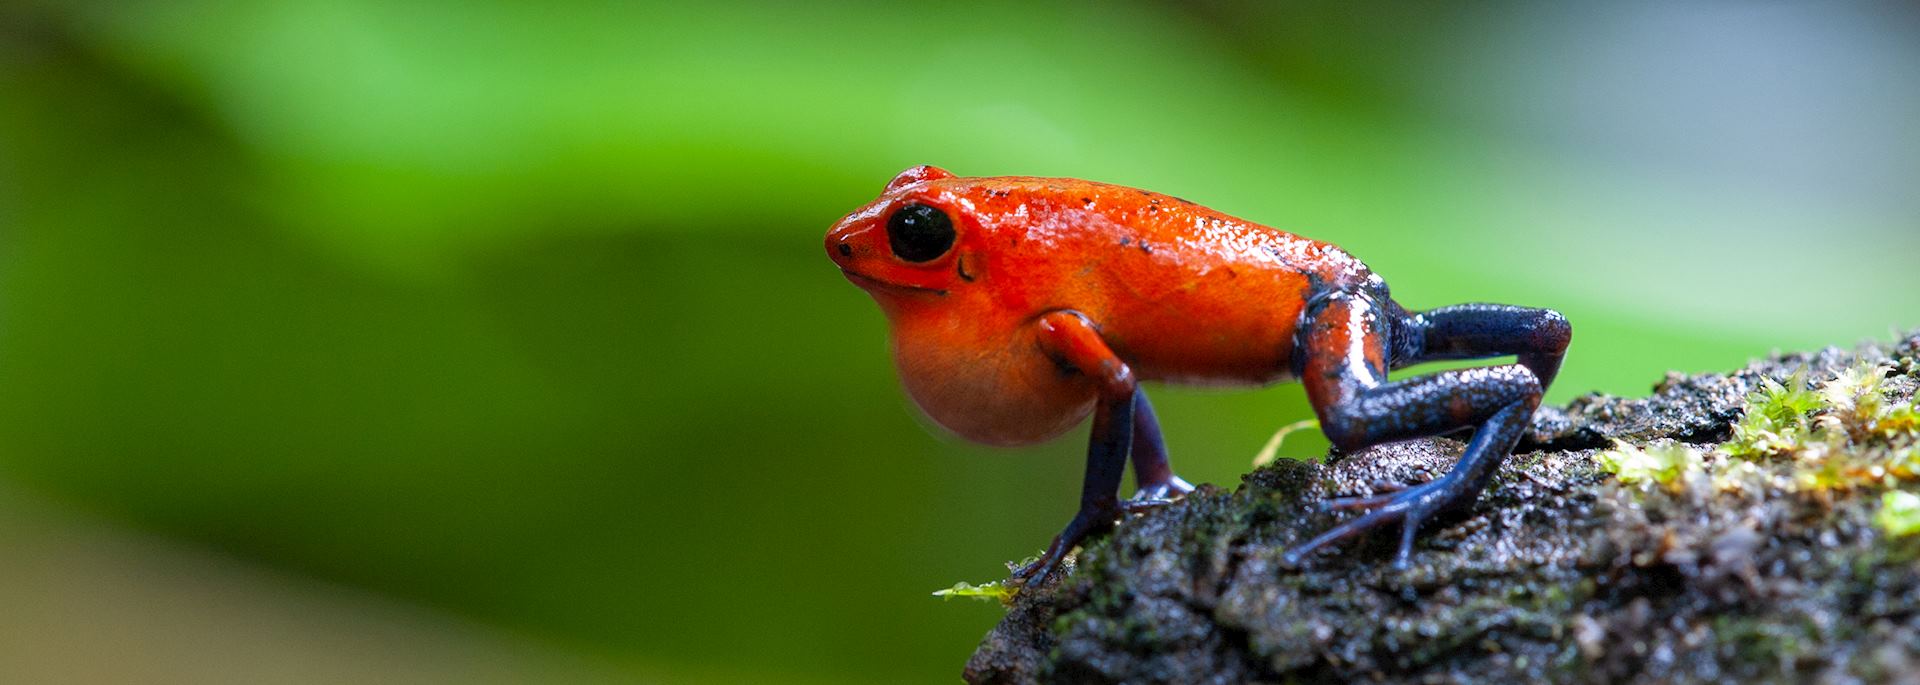 Strawberry poison-dart frog, La Selva Biological Station